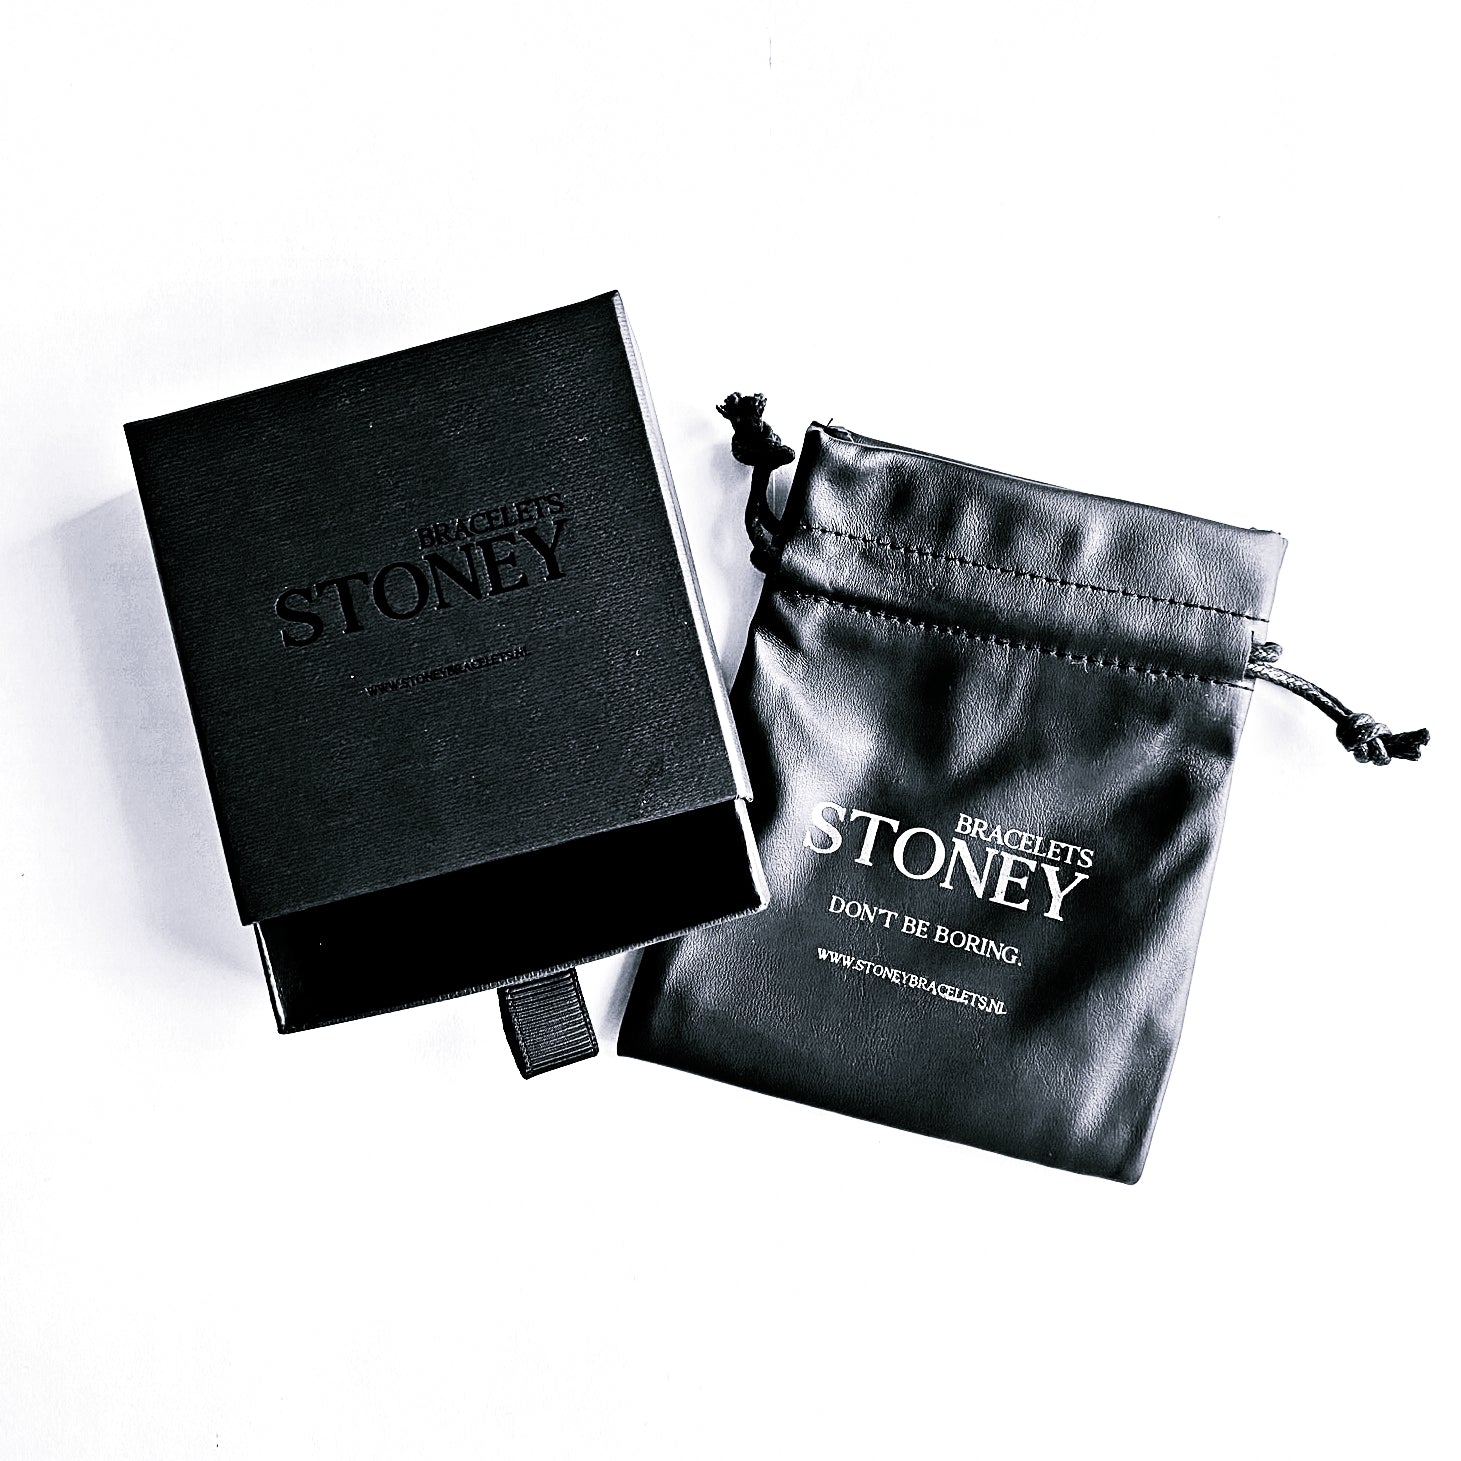 Een zwart etui met het woord Stoney Bracelets erop, perfect voor het opbergen van Orange Army Stones (8 mm) sieraden.